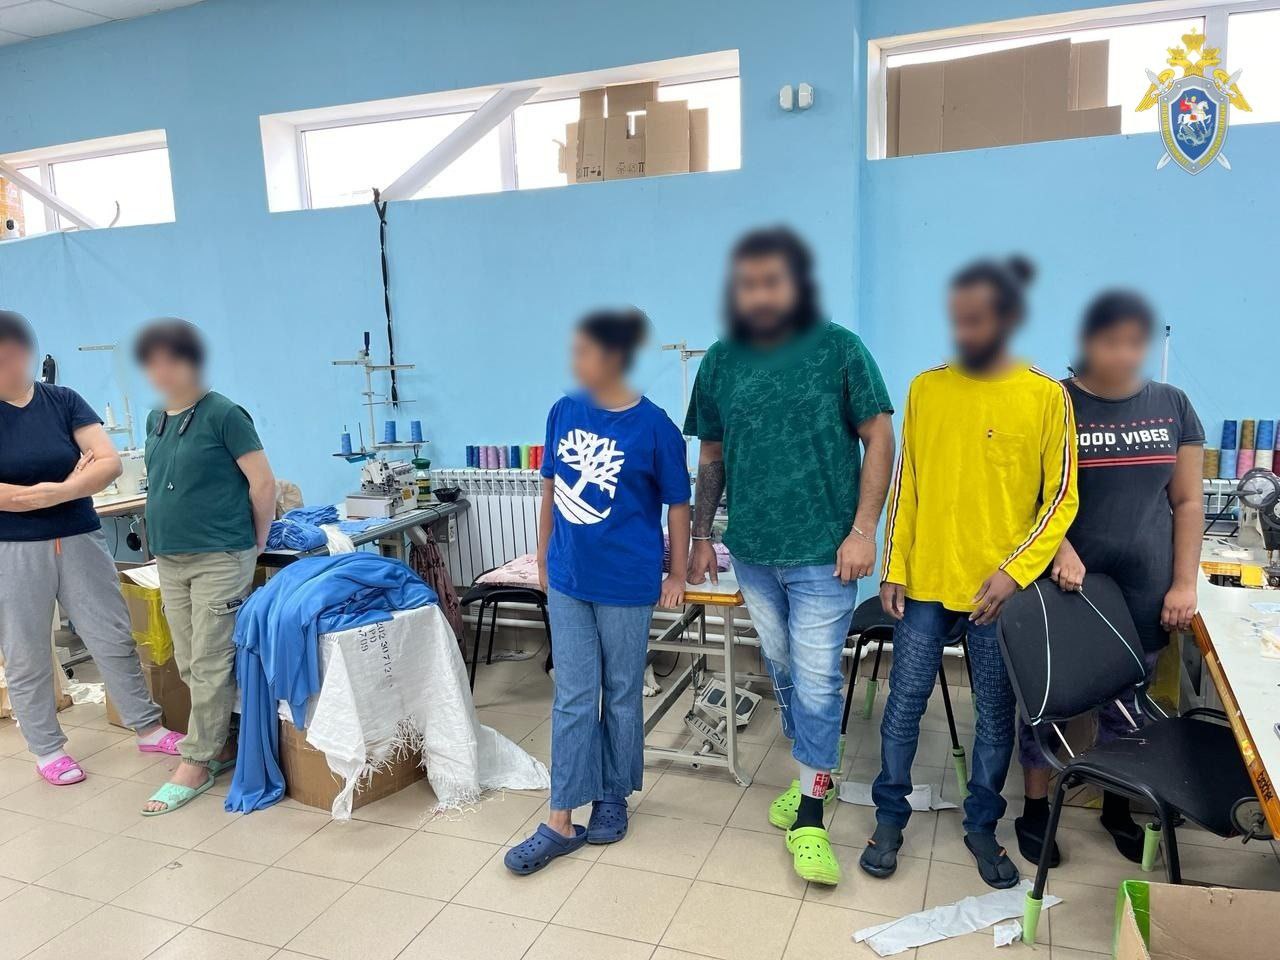 Узбечка и москвичка открыли в Новомосковске швейный цех с нелегальными мигрантами